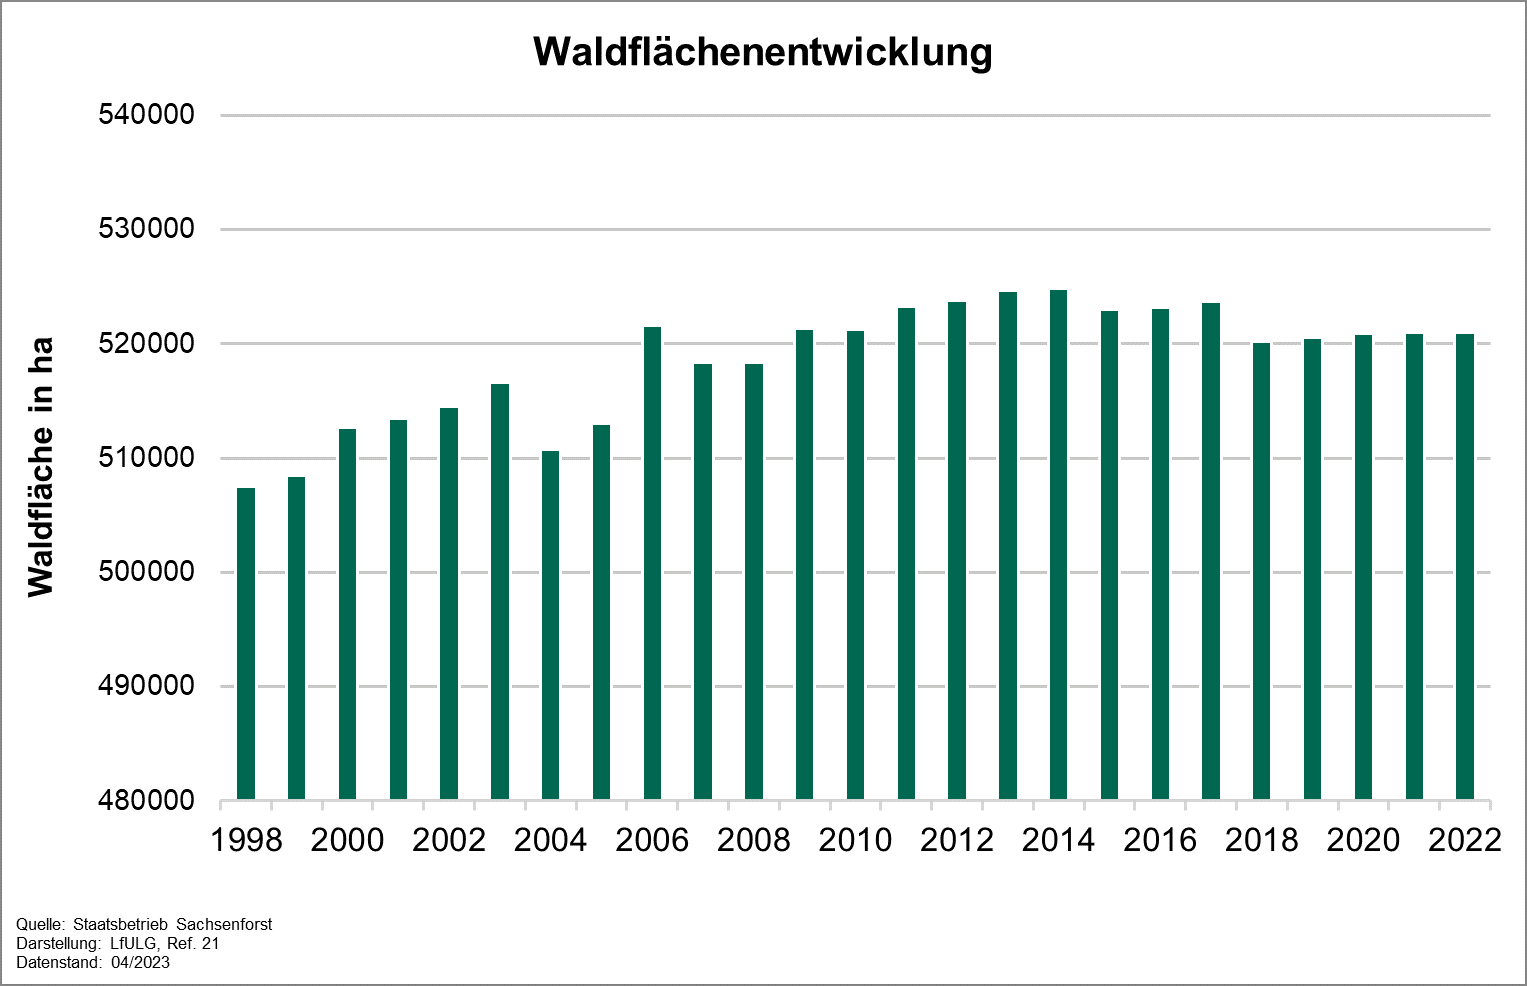 Die Grafik zeigt die Entwicklung des Indikators Waldflächenentwicklung für die Jahr 1998 bis 2022. Der Indikator durchlief einen schwankenden Anstieg bis zum Jahr 2015 und fiel in den letzten Jahren leicht ab. 